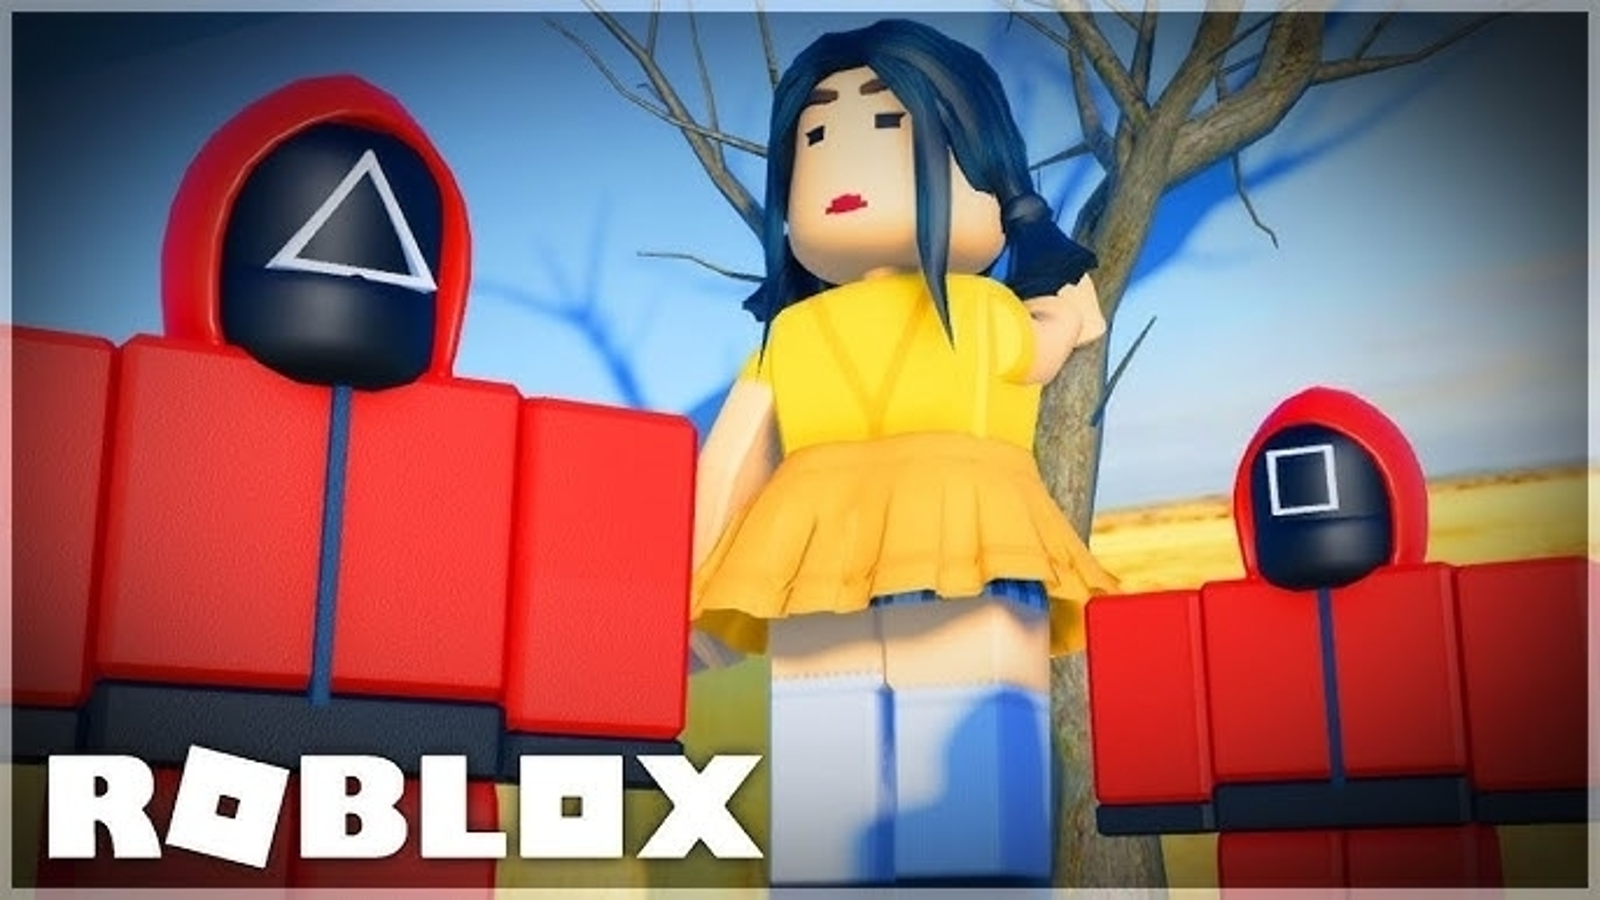 Roblox - Guias de jogos, Notícias e Atualizações